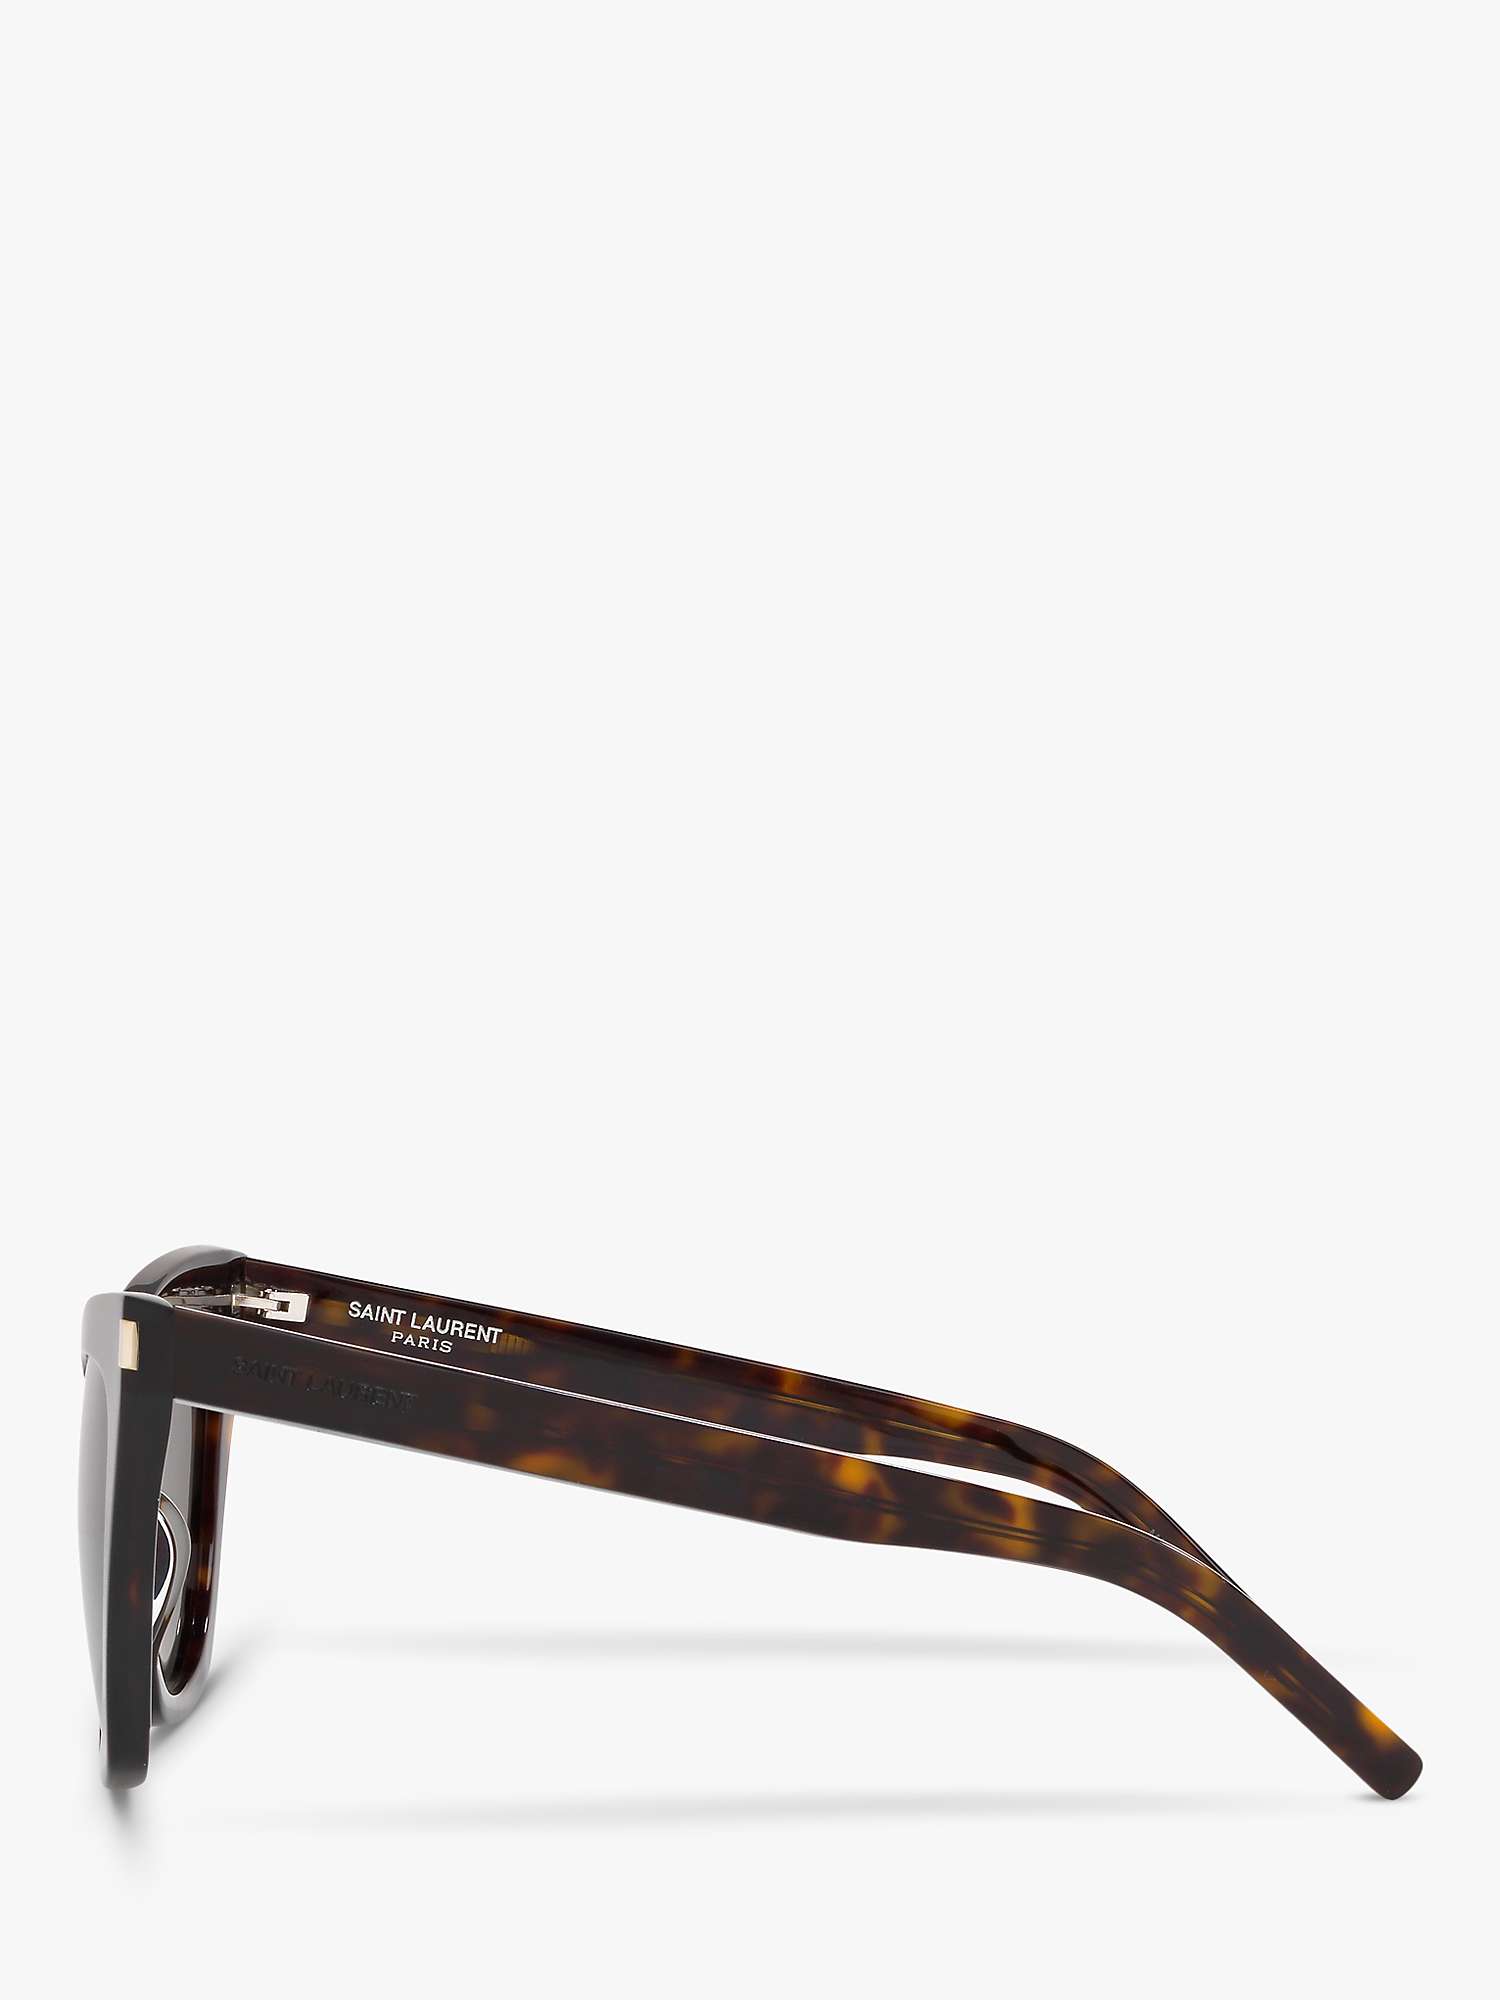 Buy Yves Saint Laurent SL 214 Women's Kate Cat's Eye Sunglasses Online at johnlewis.com